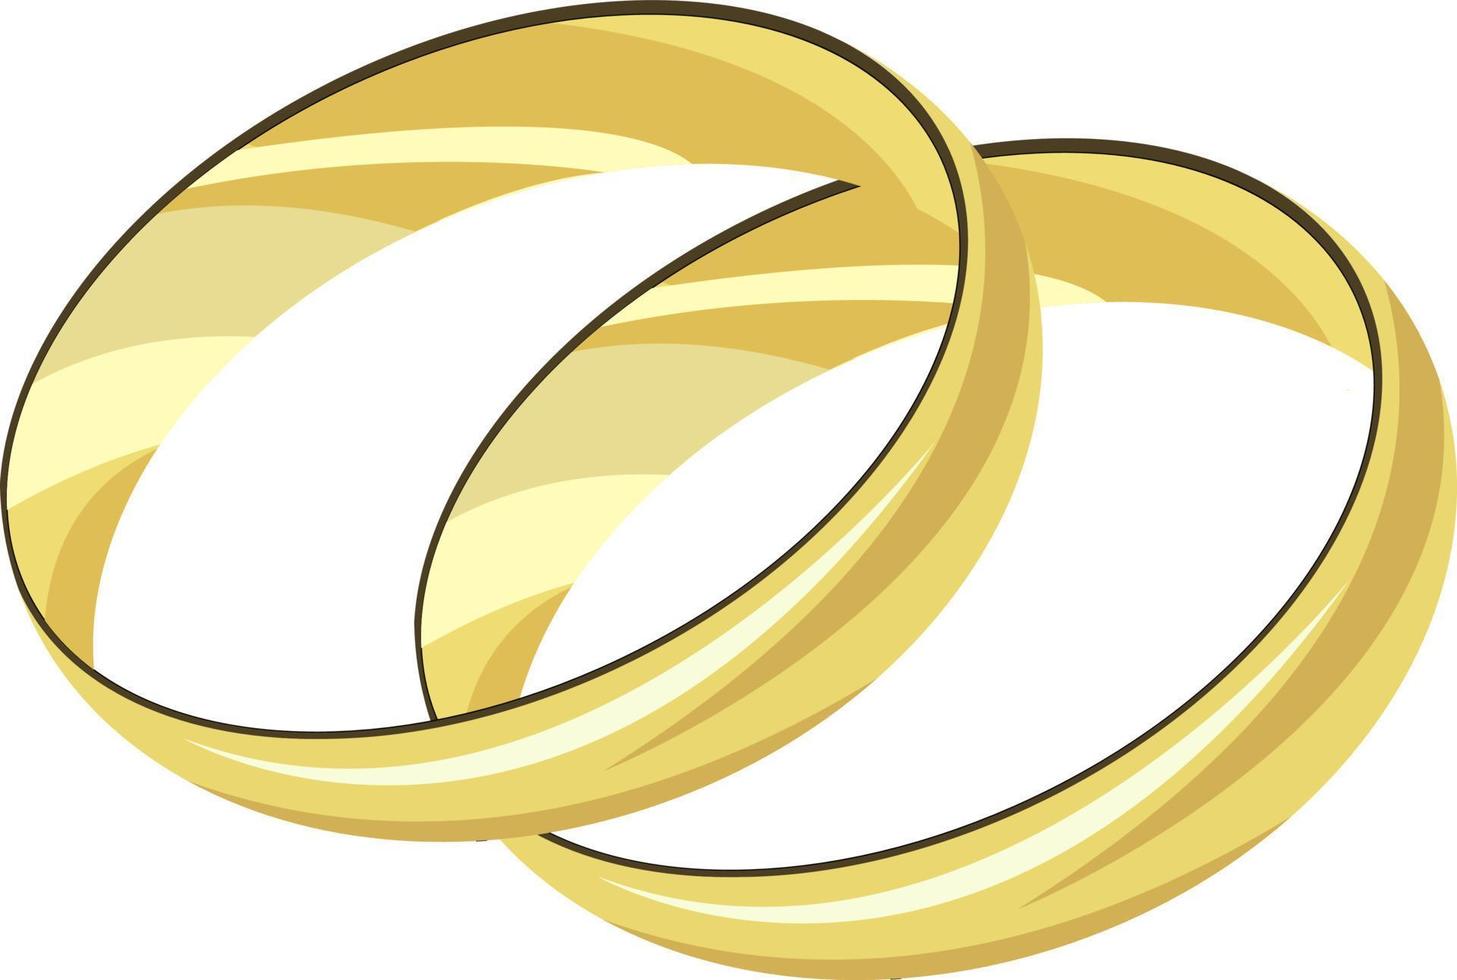 Golden rings, illustration, vector on white background